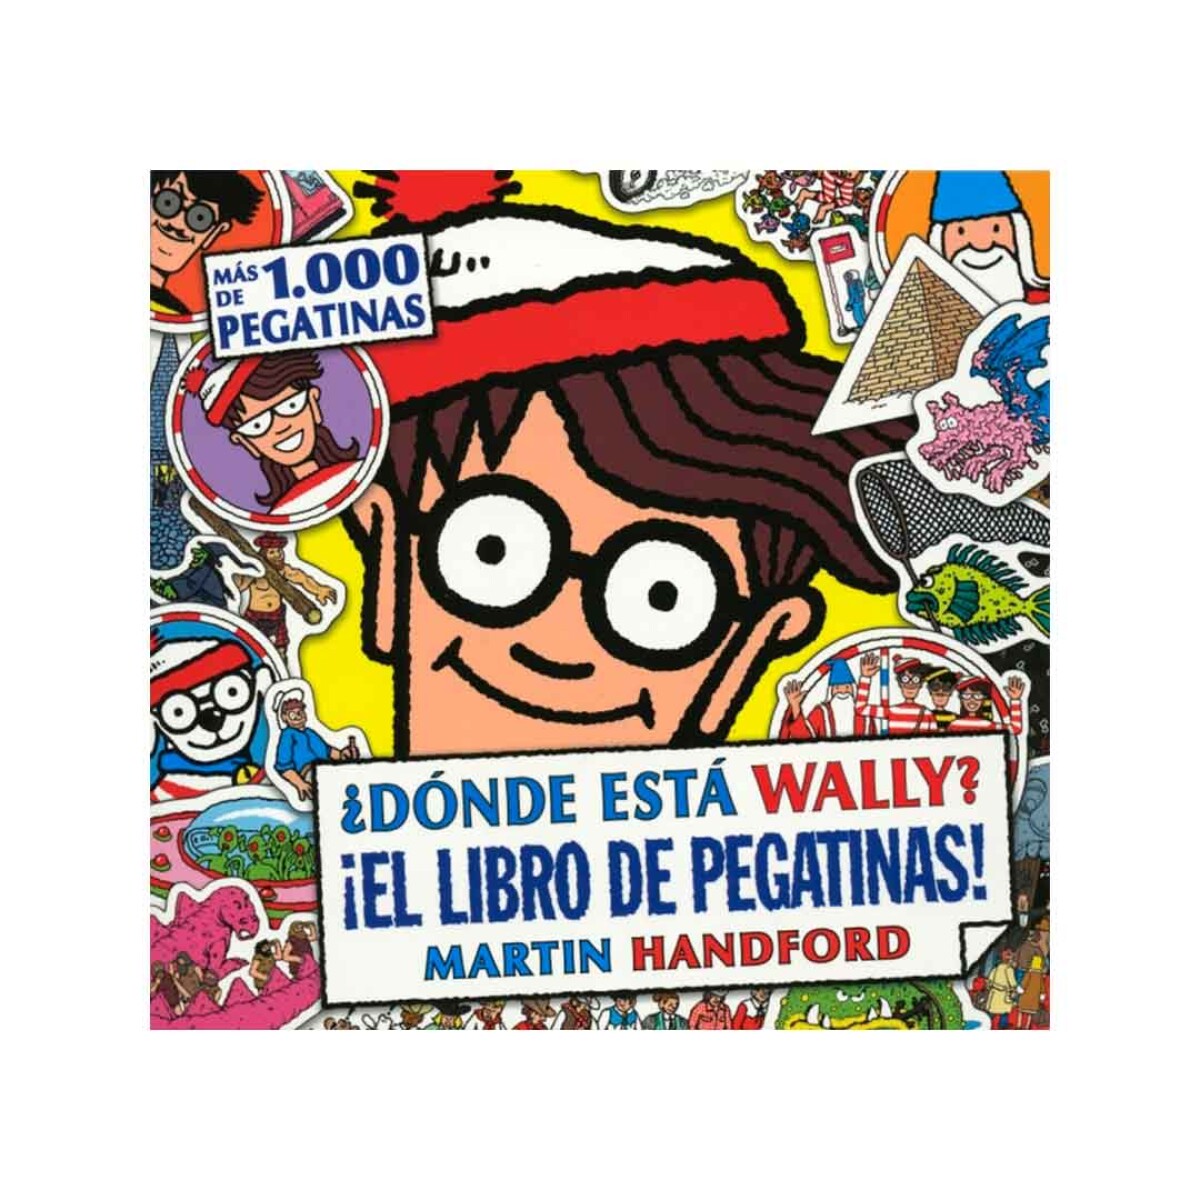 Mini Libro de pegotines ¿Donde está Wally? stickers - 001 